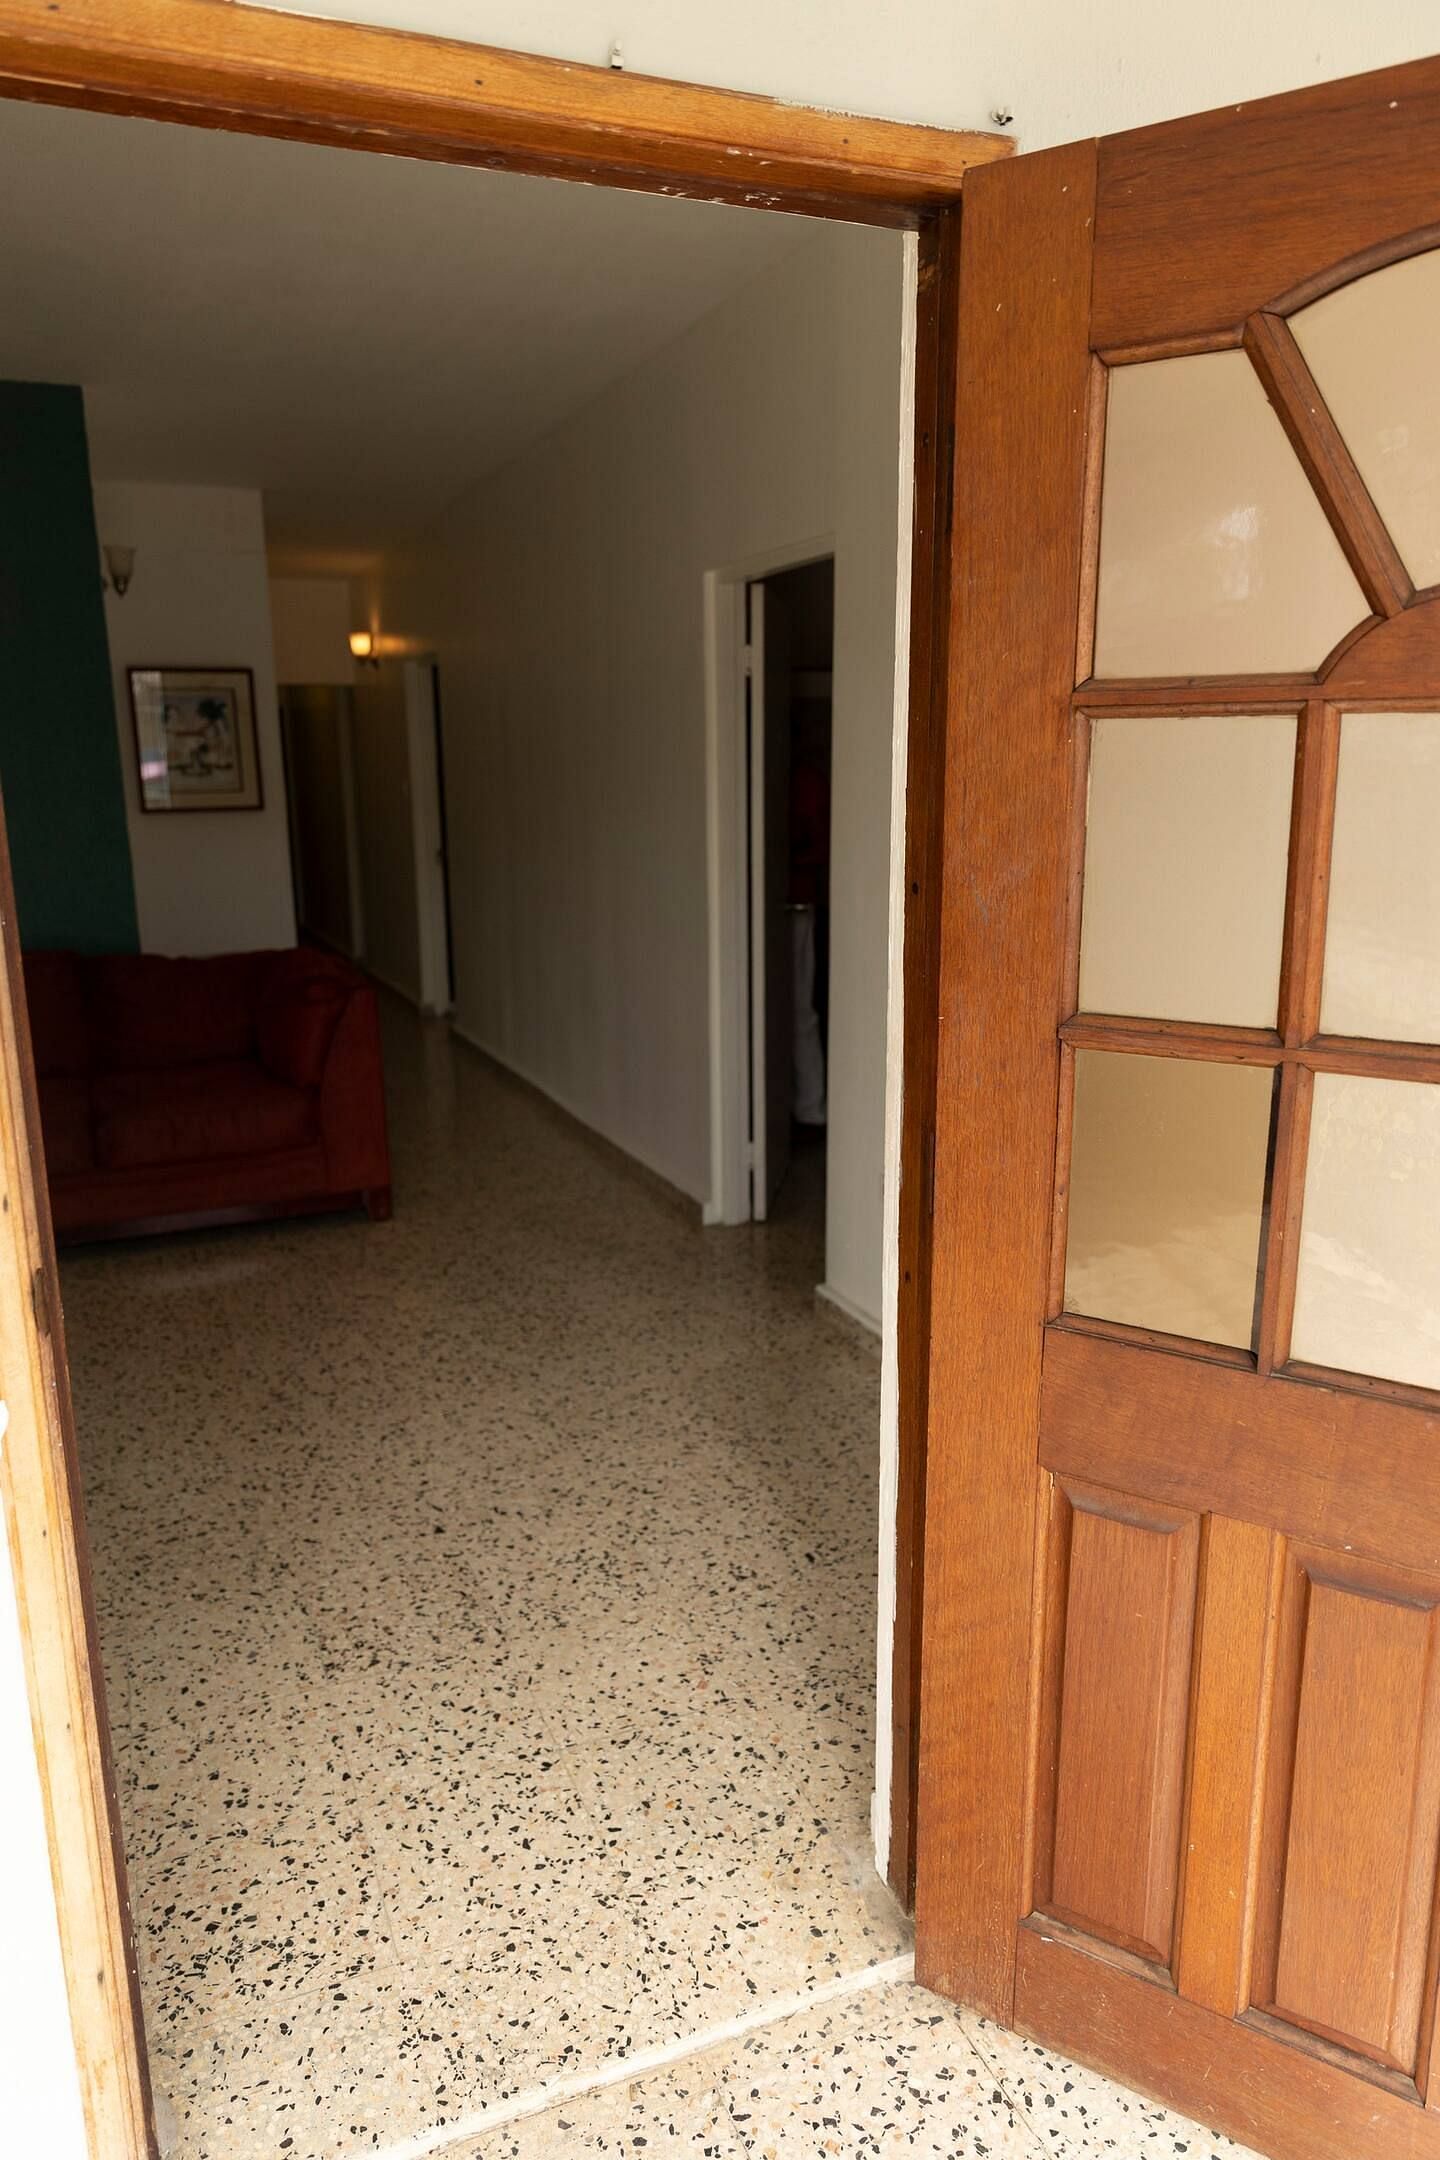 JWguest Apartment at San Juan, San Juan | LasLomas 4B Bunkers Bedroom #2 | Jwbnb no brobnb 13